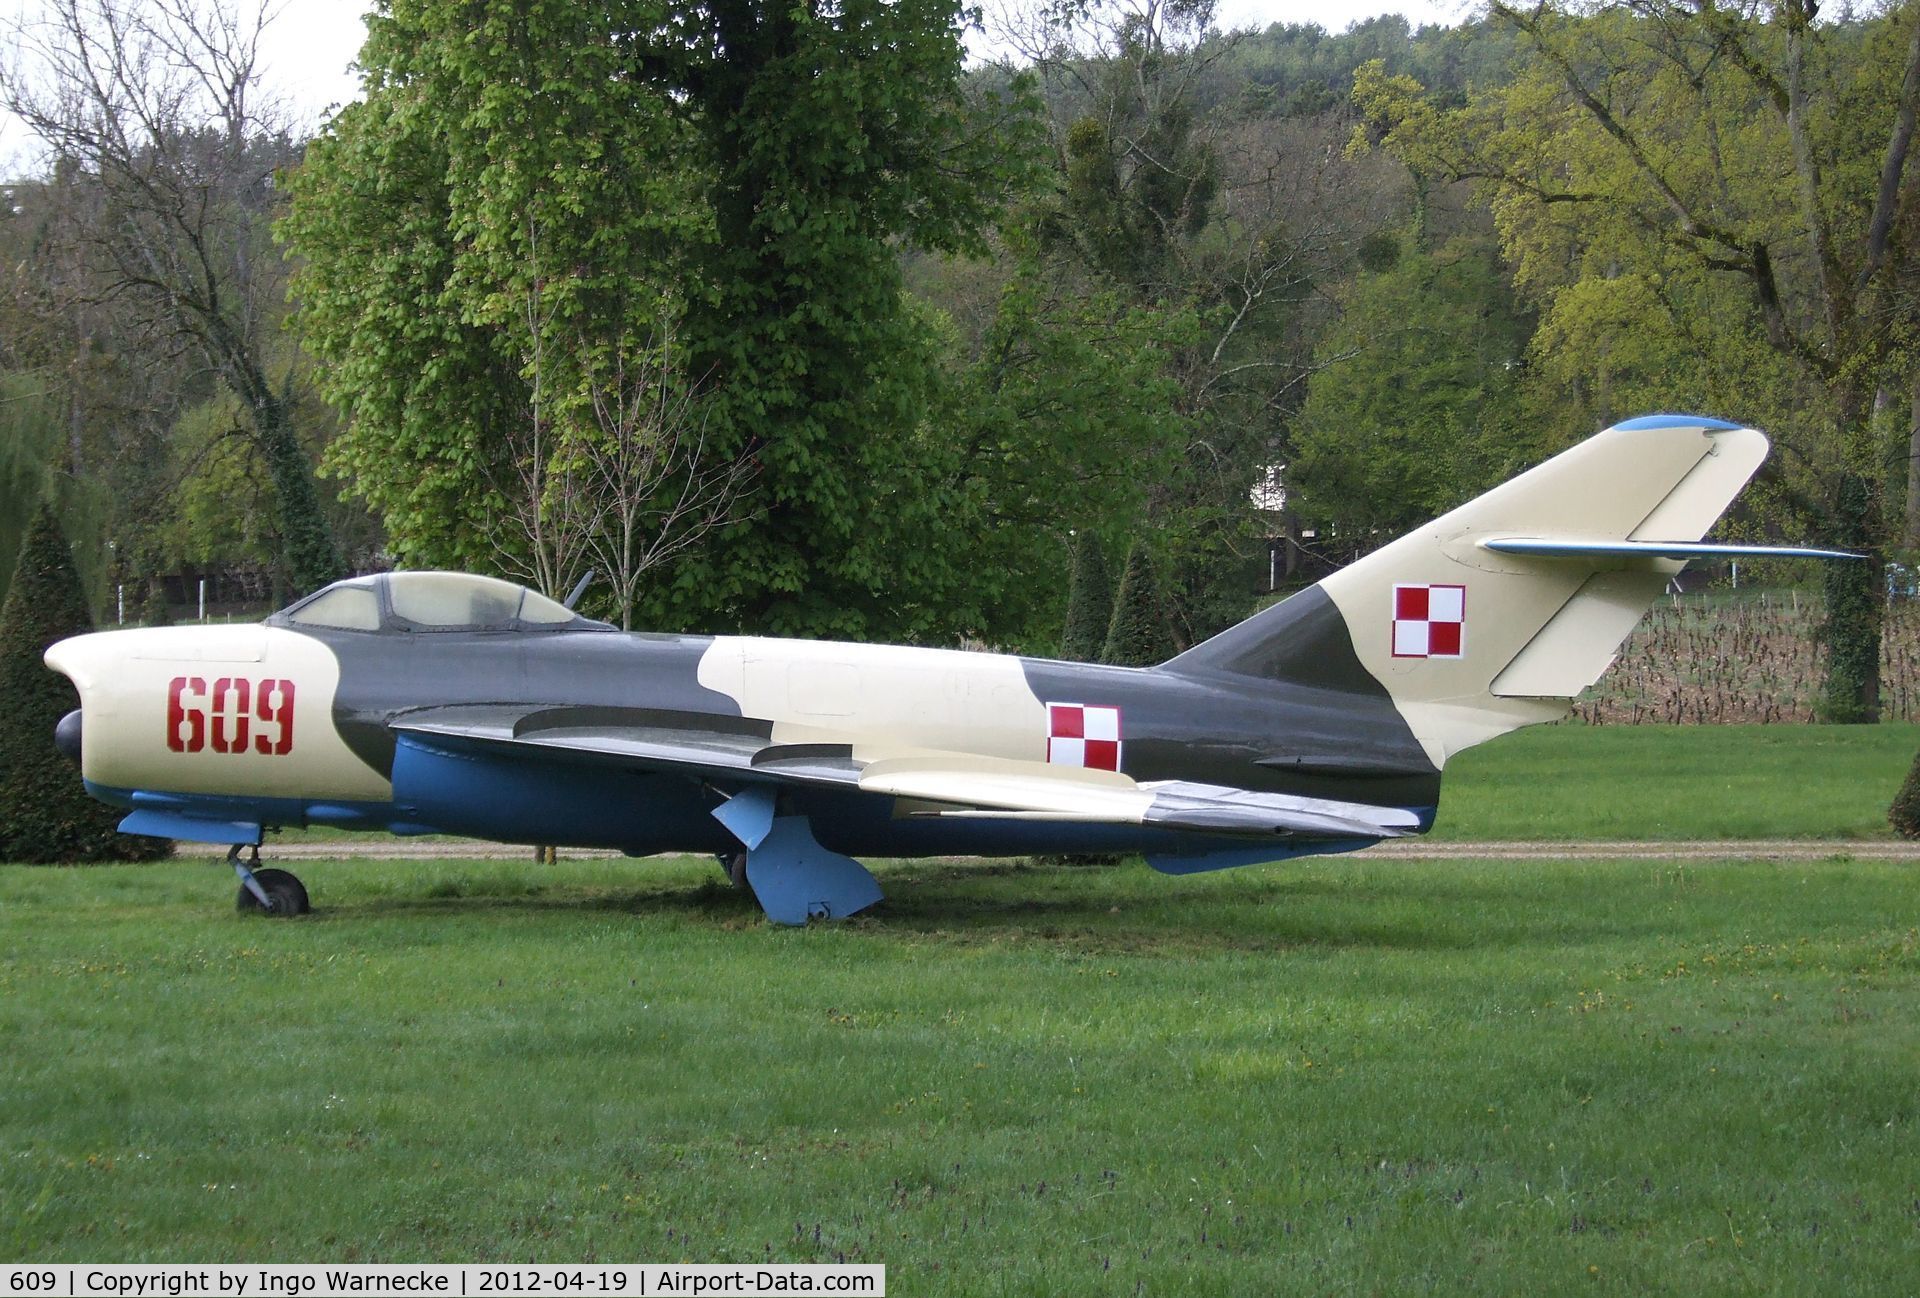 609, PZL-Mielec Lim-5P C/N 1D-0609, PZL-Mielec Lim-5P (MiG-17PF) FRESCO-D at the Musee de l'Aviation du Chateau, Savigny-les-Beaune